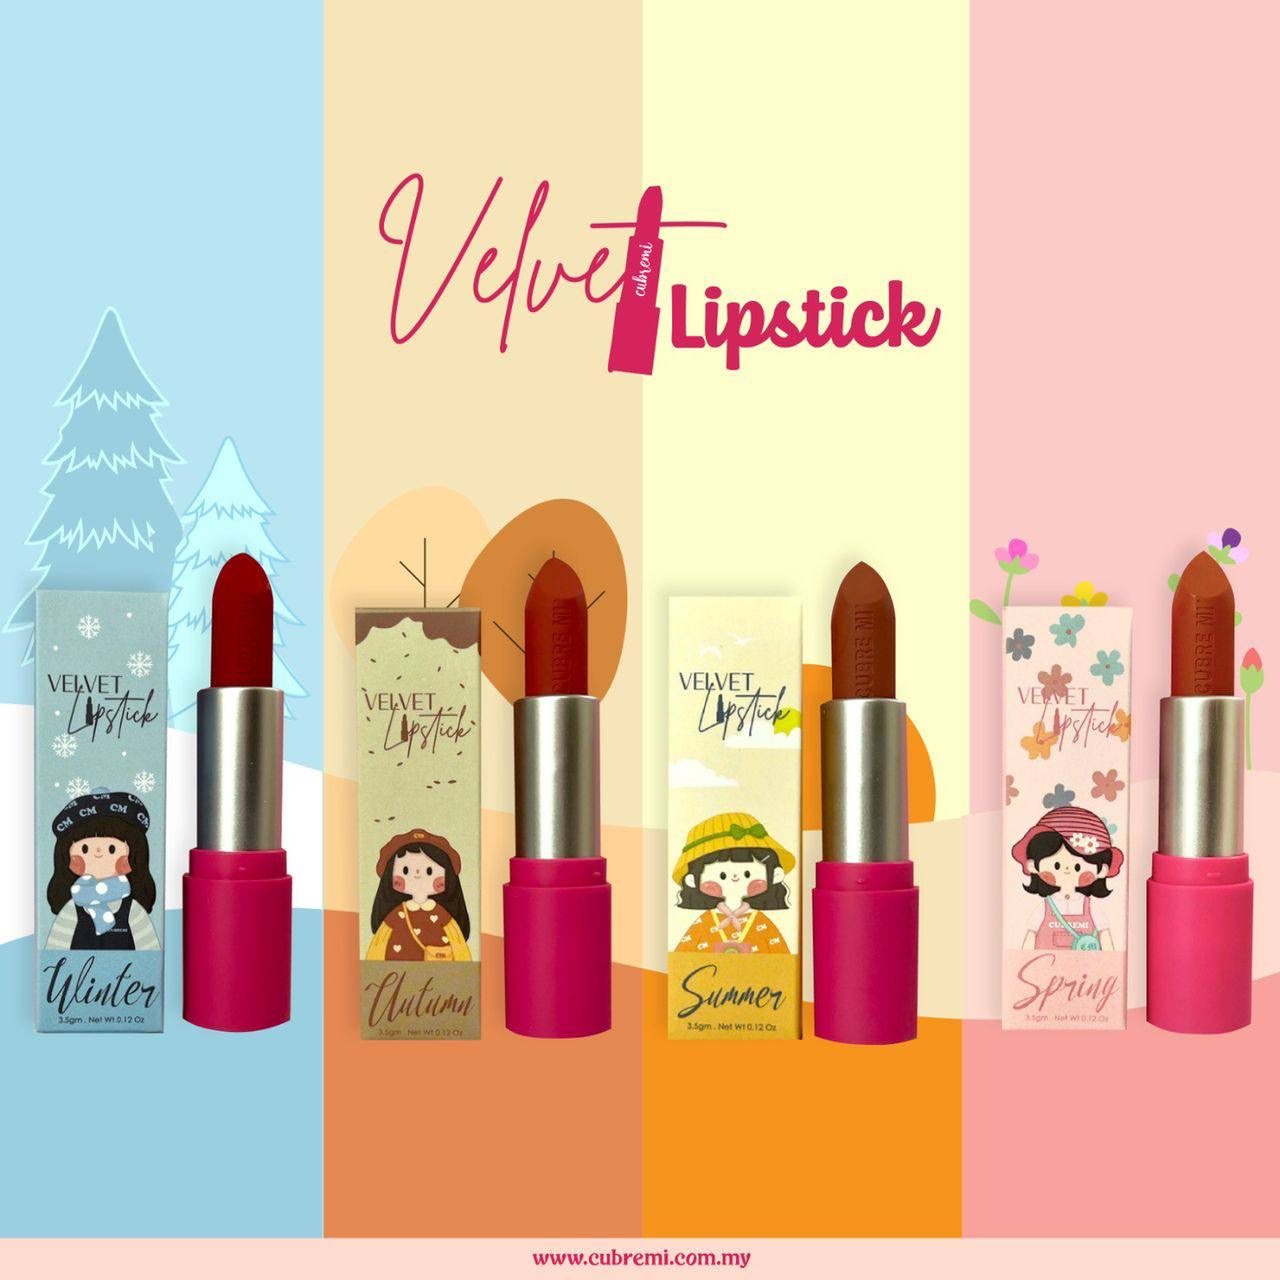 Cubremi Velvet Lipstick